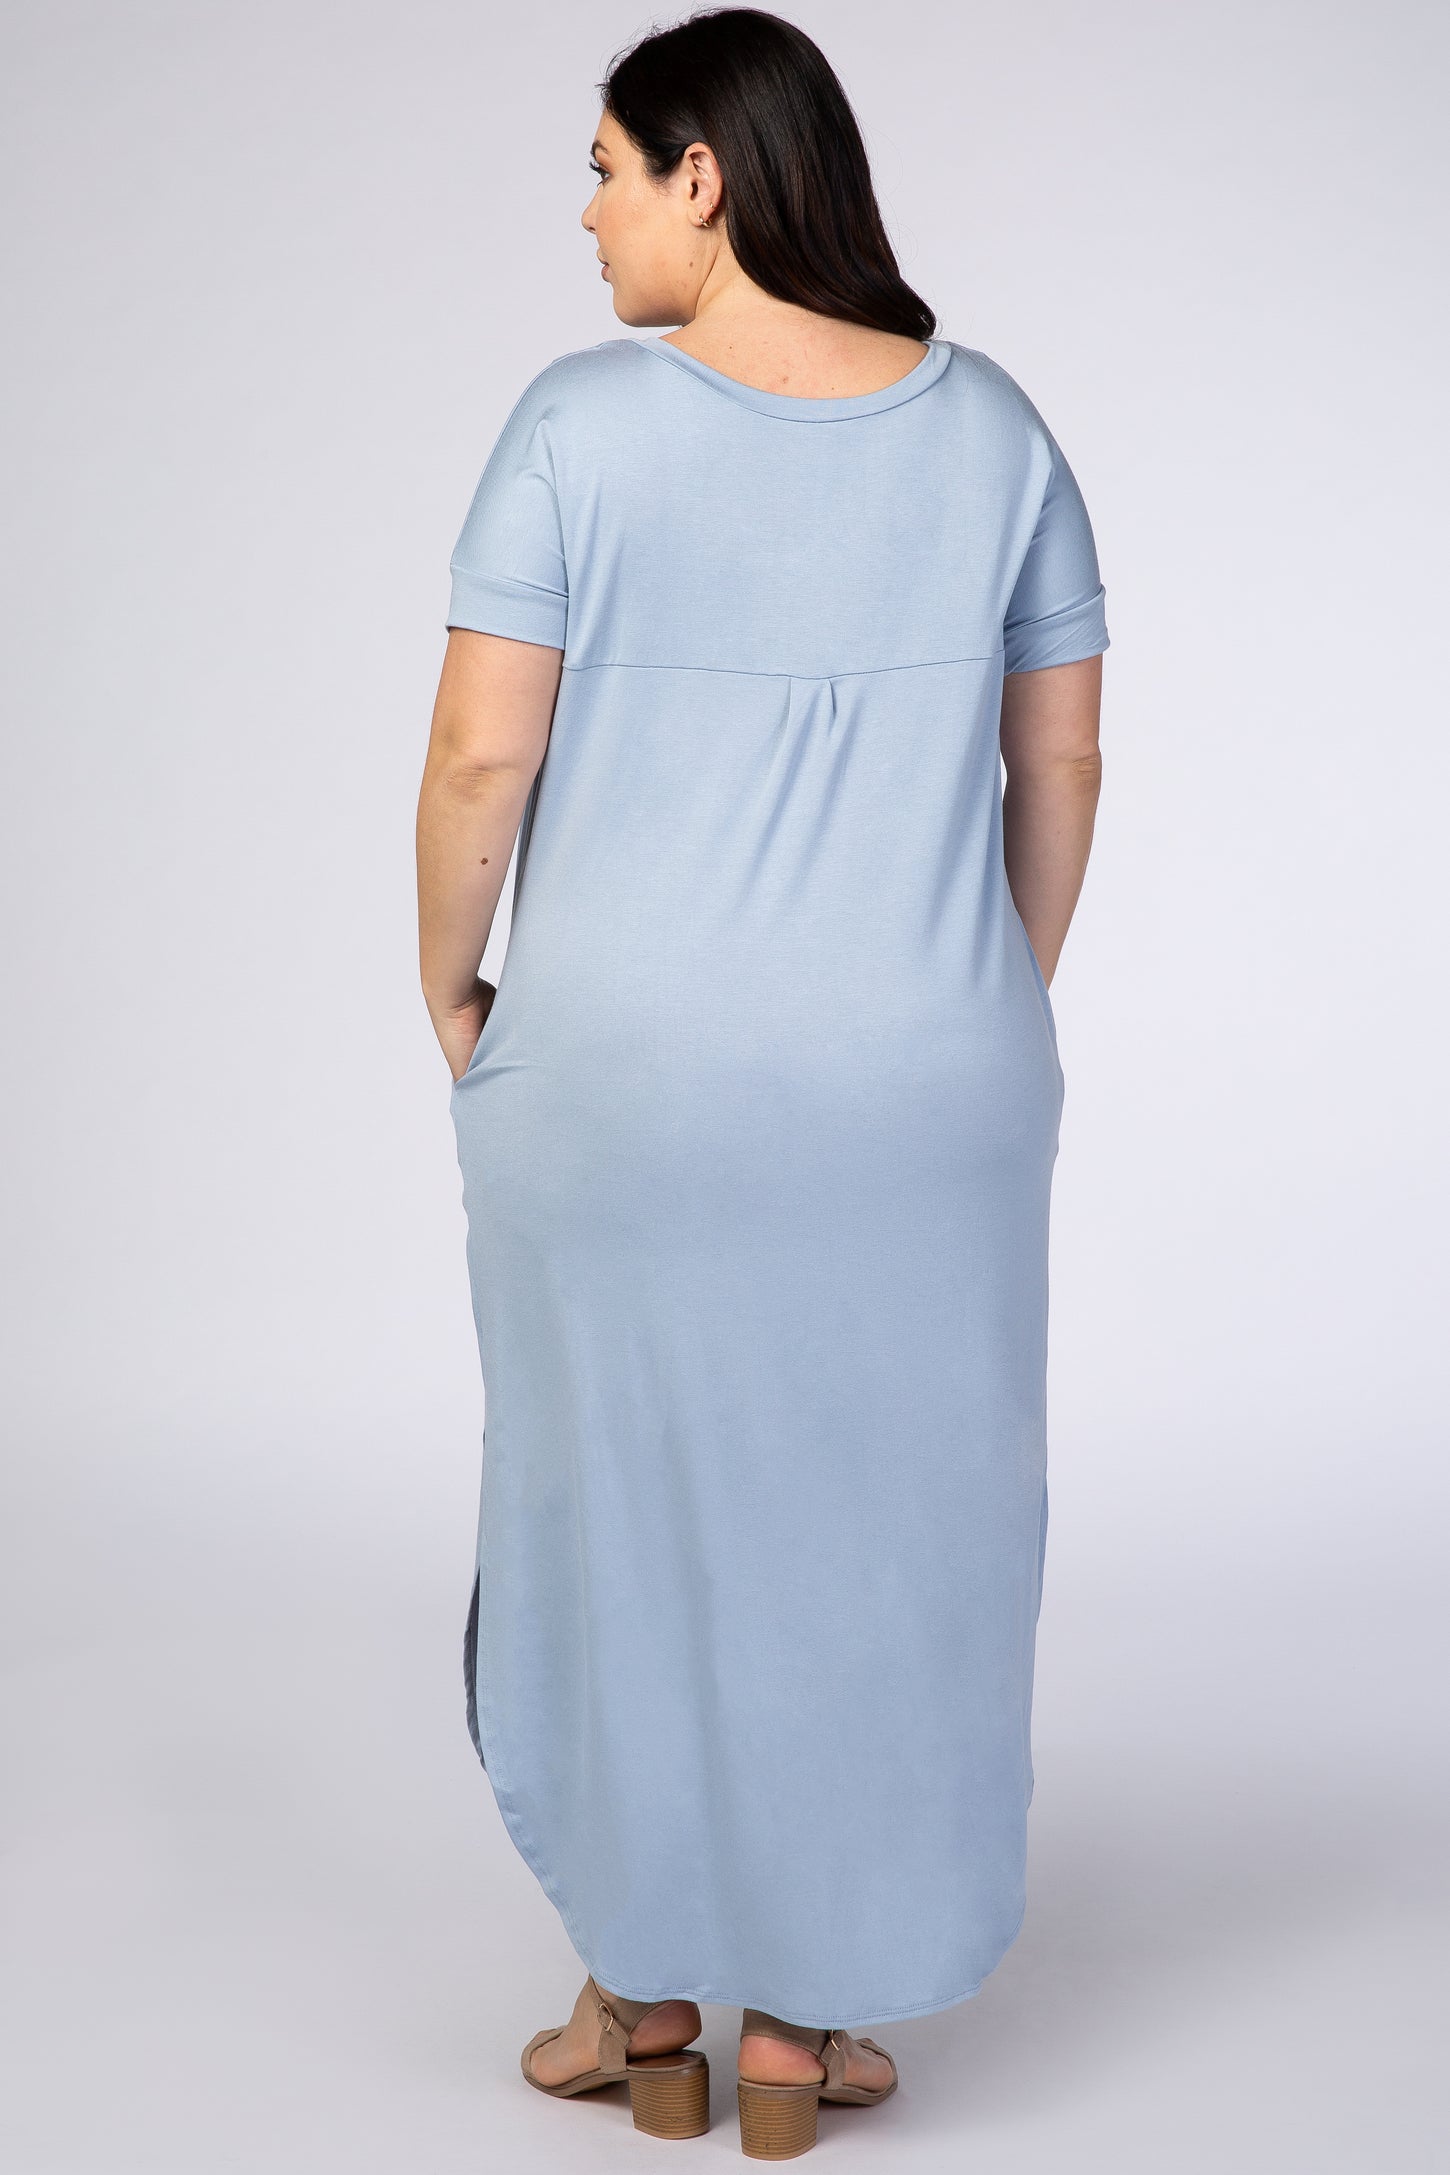 PinkBlush Light Blue V-Neck Short Sleeve Plus Maxi Dress